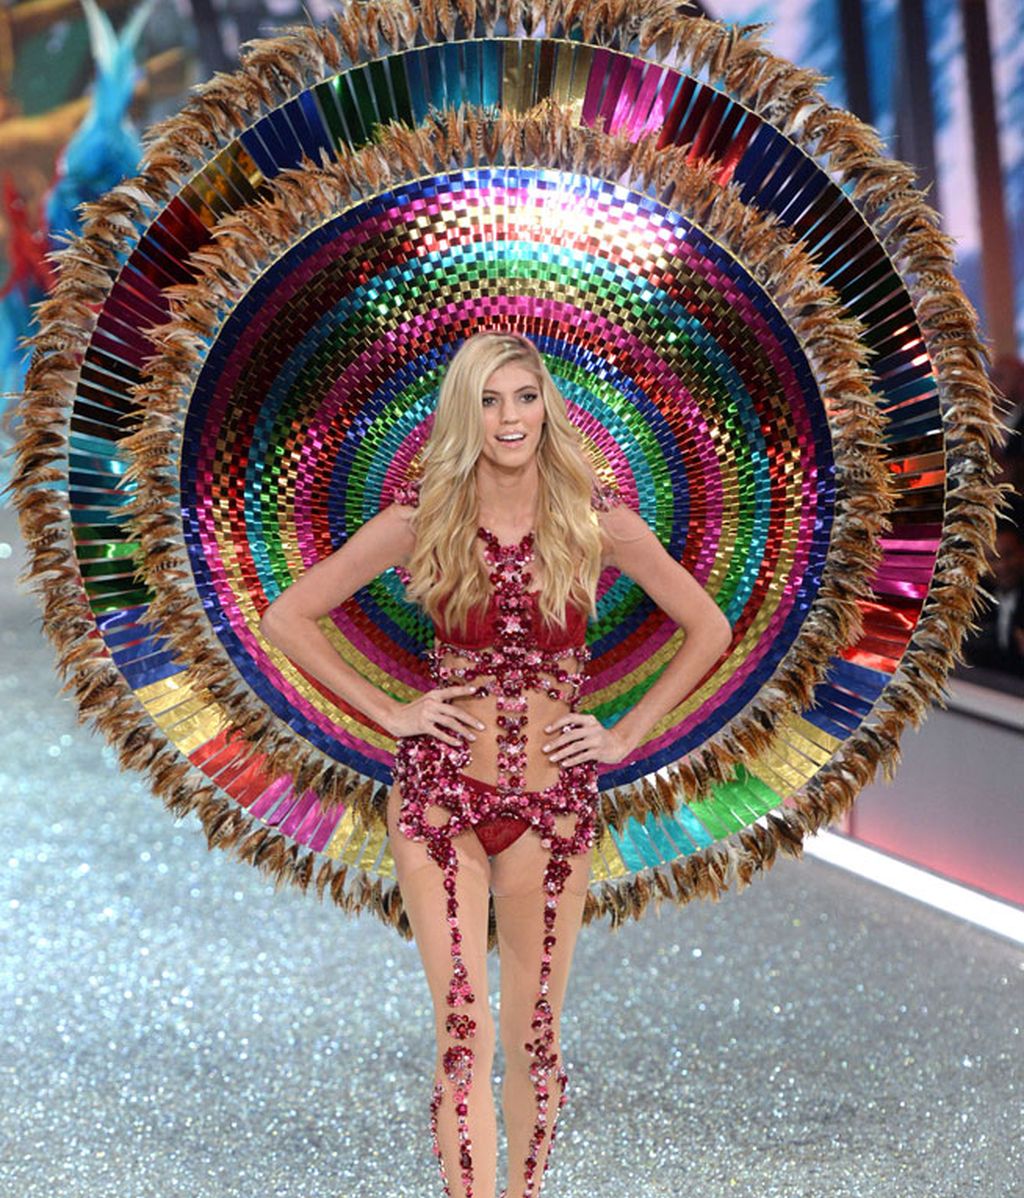 Lo que necesitas saber sobre el desfile de Los Ángeles de Victoria's Secret, foto a foto